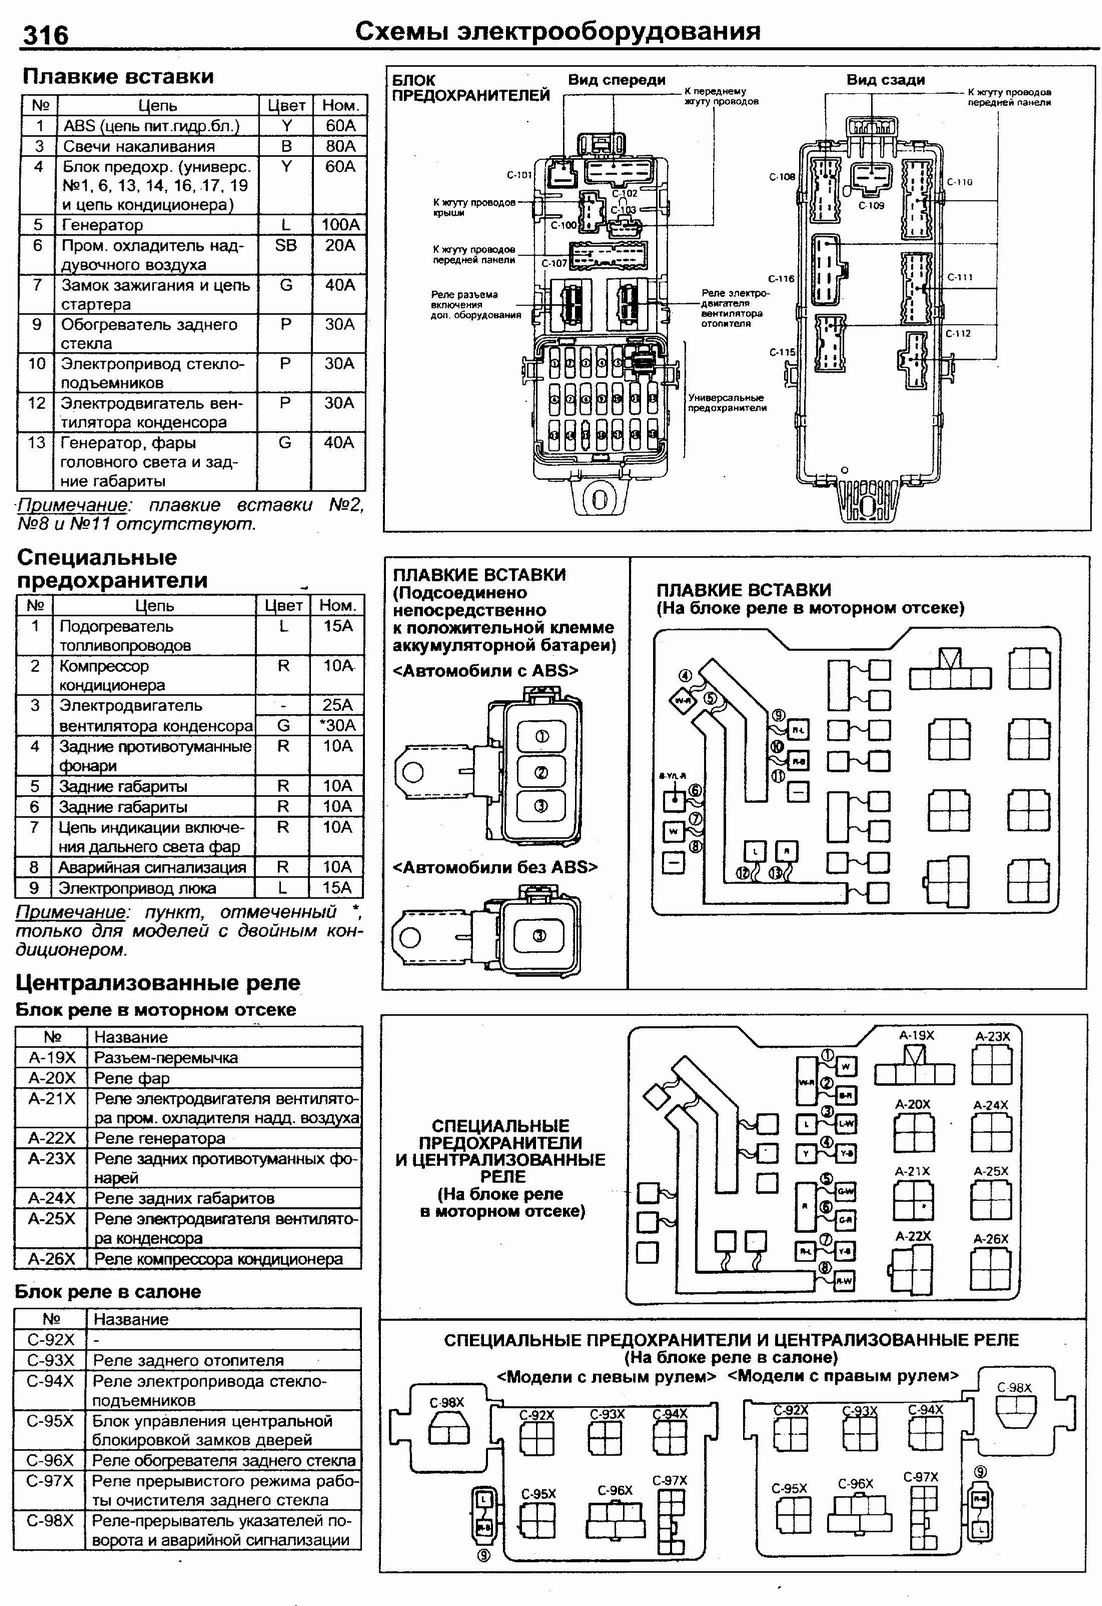 Схема предохранителей и реле ваз 2113, 2114, 2115 » схемы предохранителей, электросхемы автомобилей